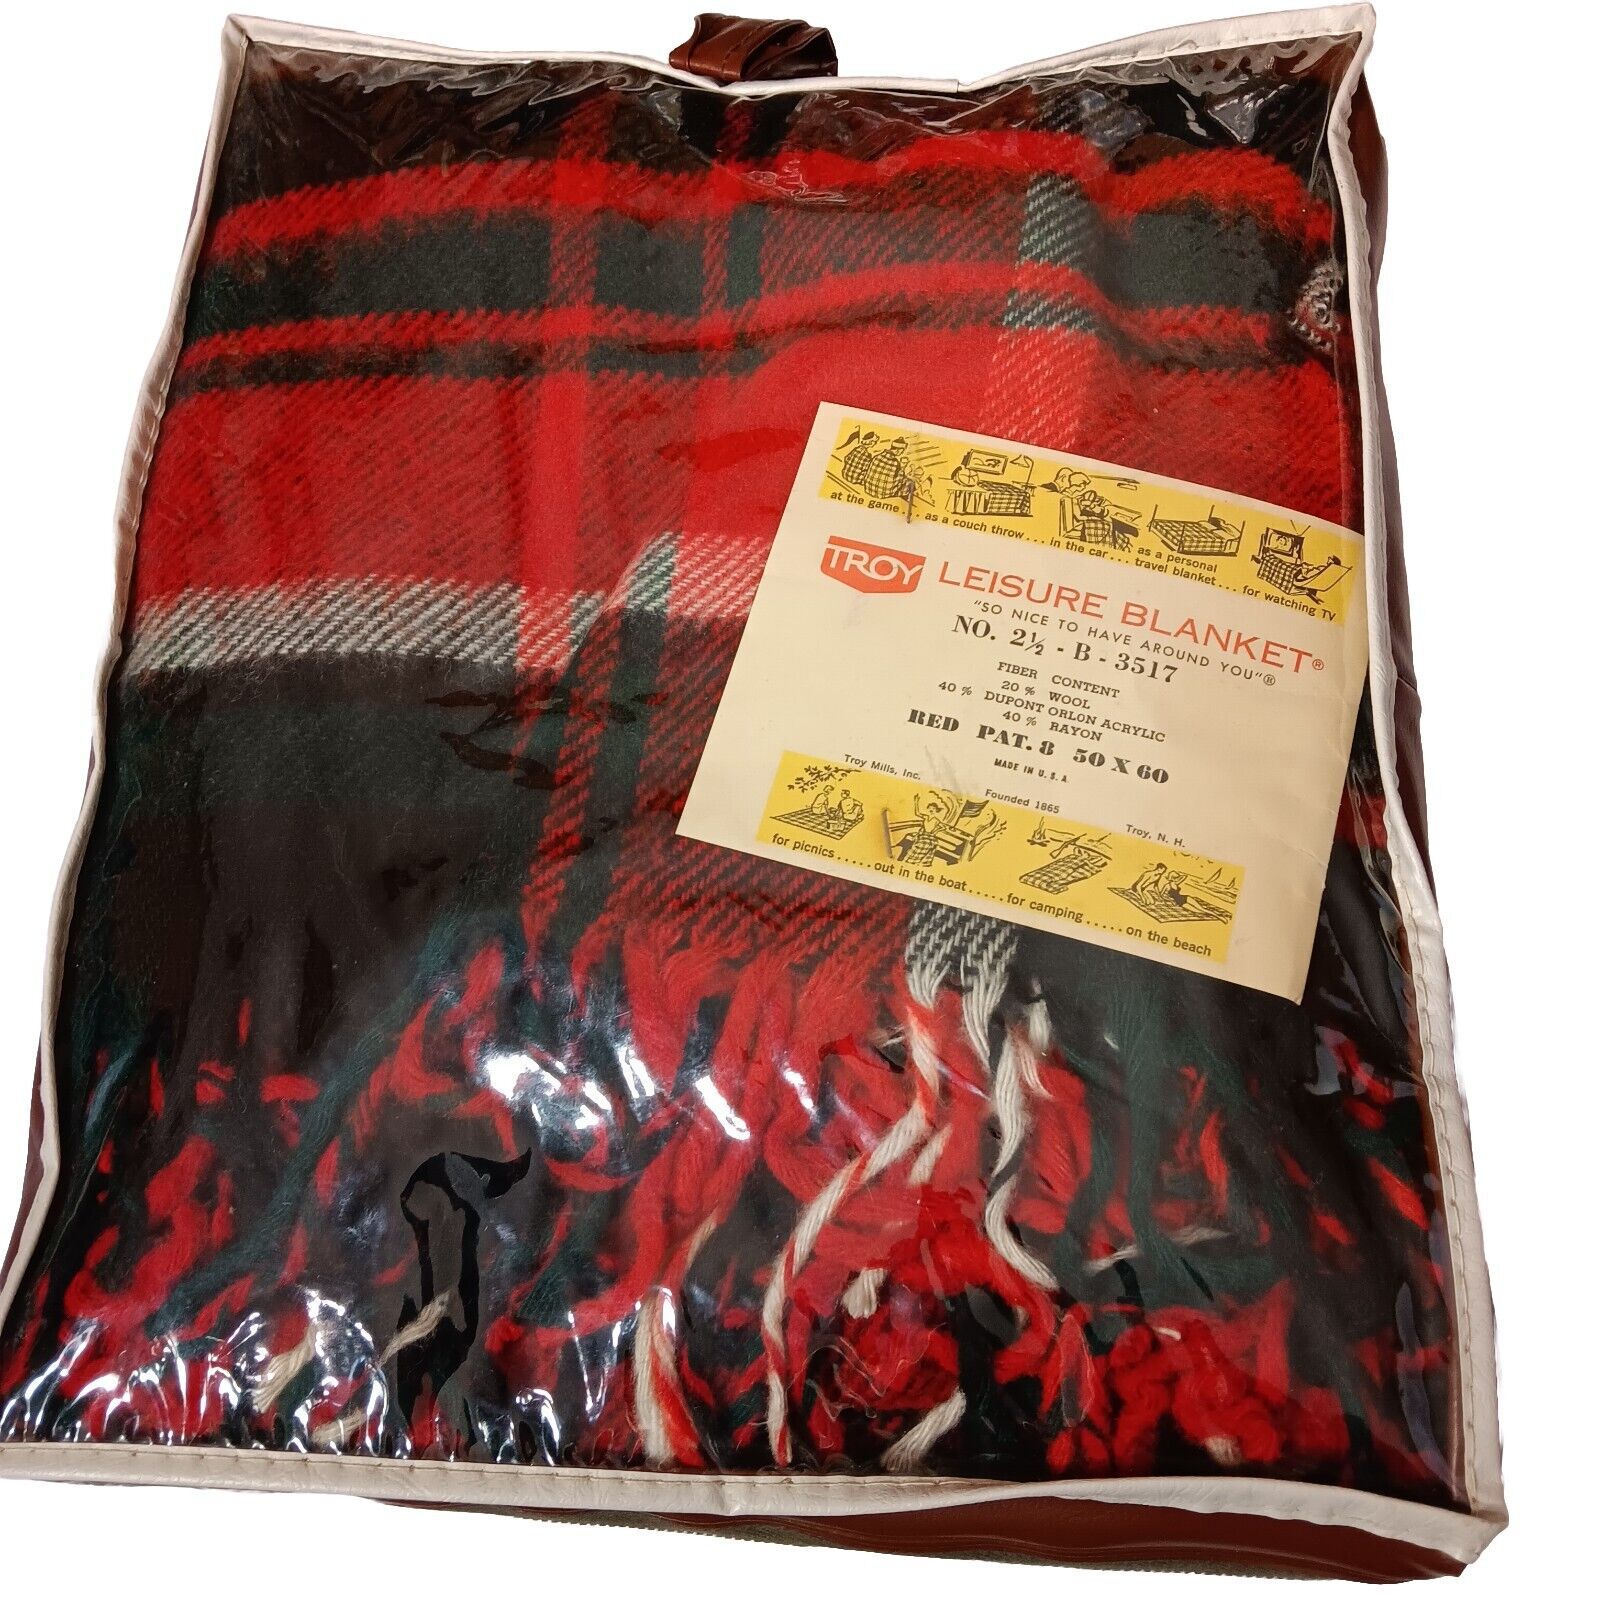 Troy Leisure Blanket Wool Blend Red Plaid Fringe NOS No 2 1/2 B3517 Vintage NOS